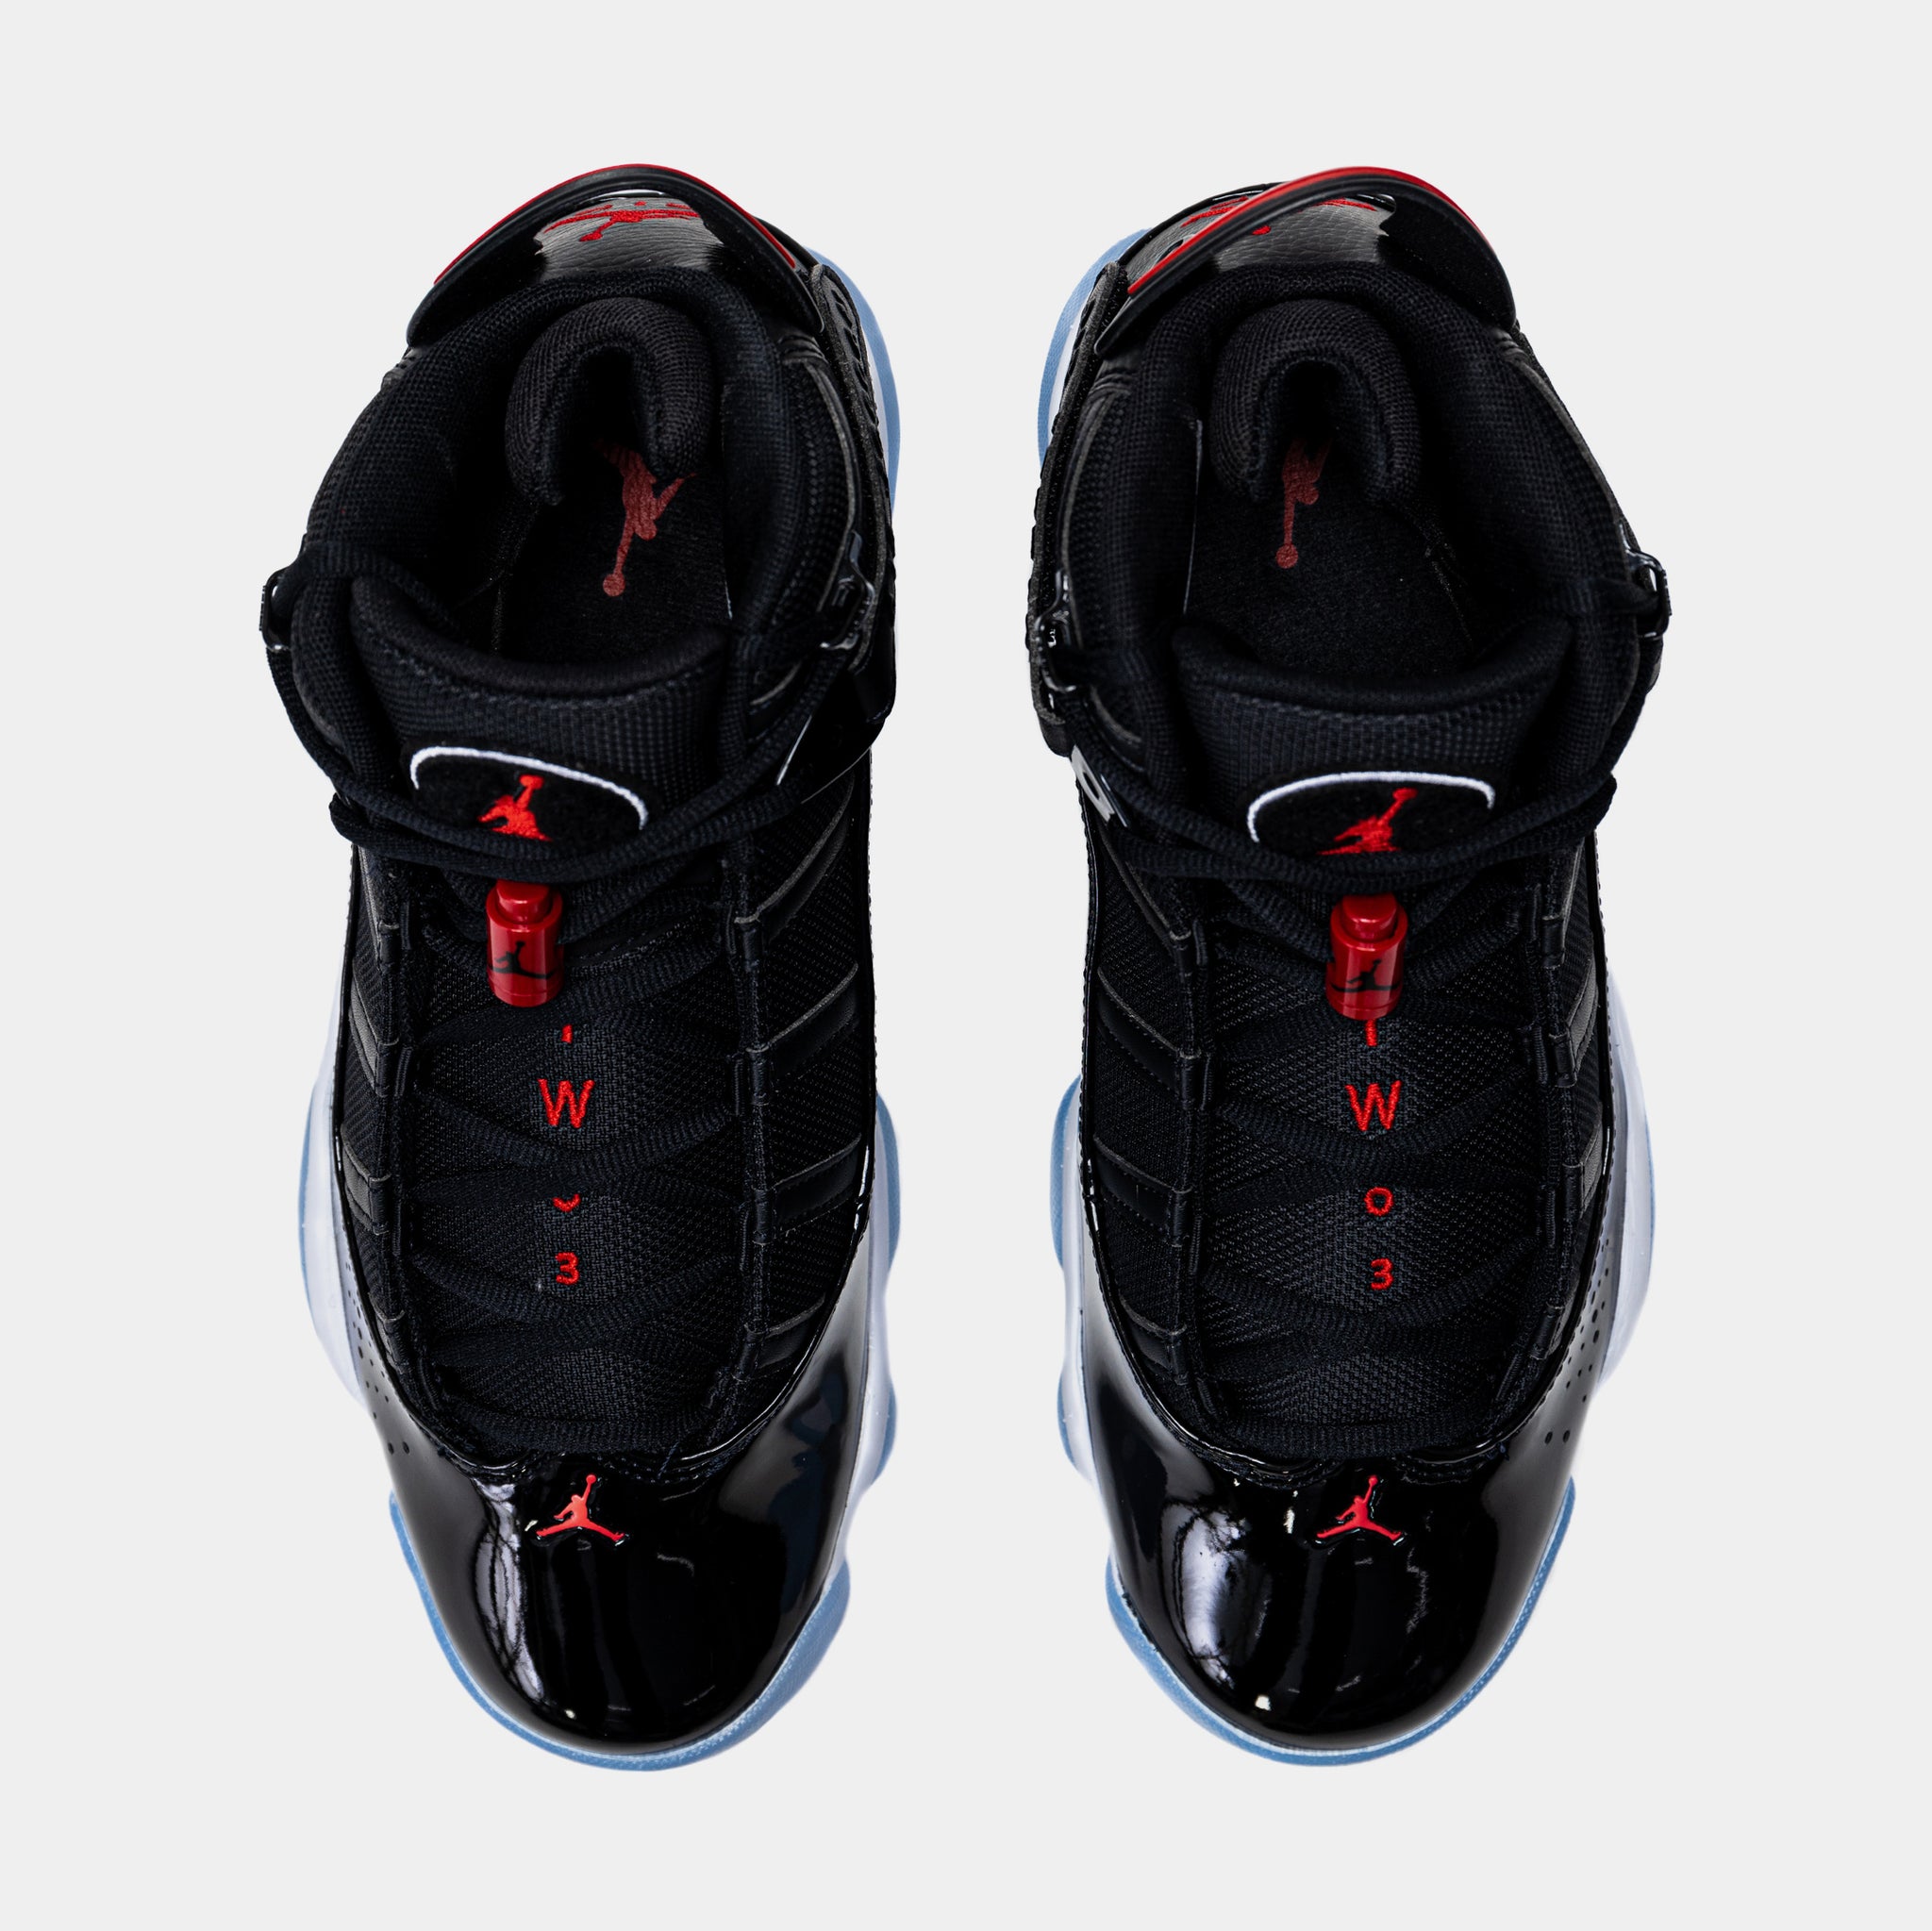 General opinion on the Jordan 6 rings? : r/Sneakers